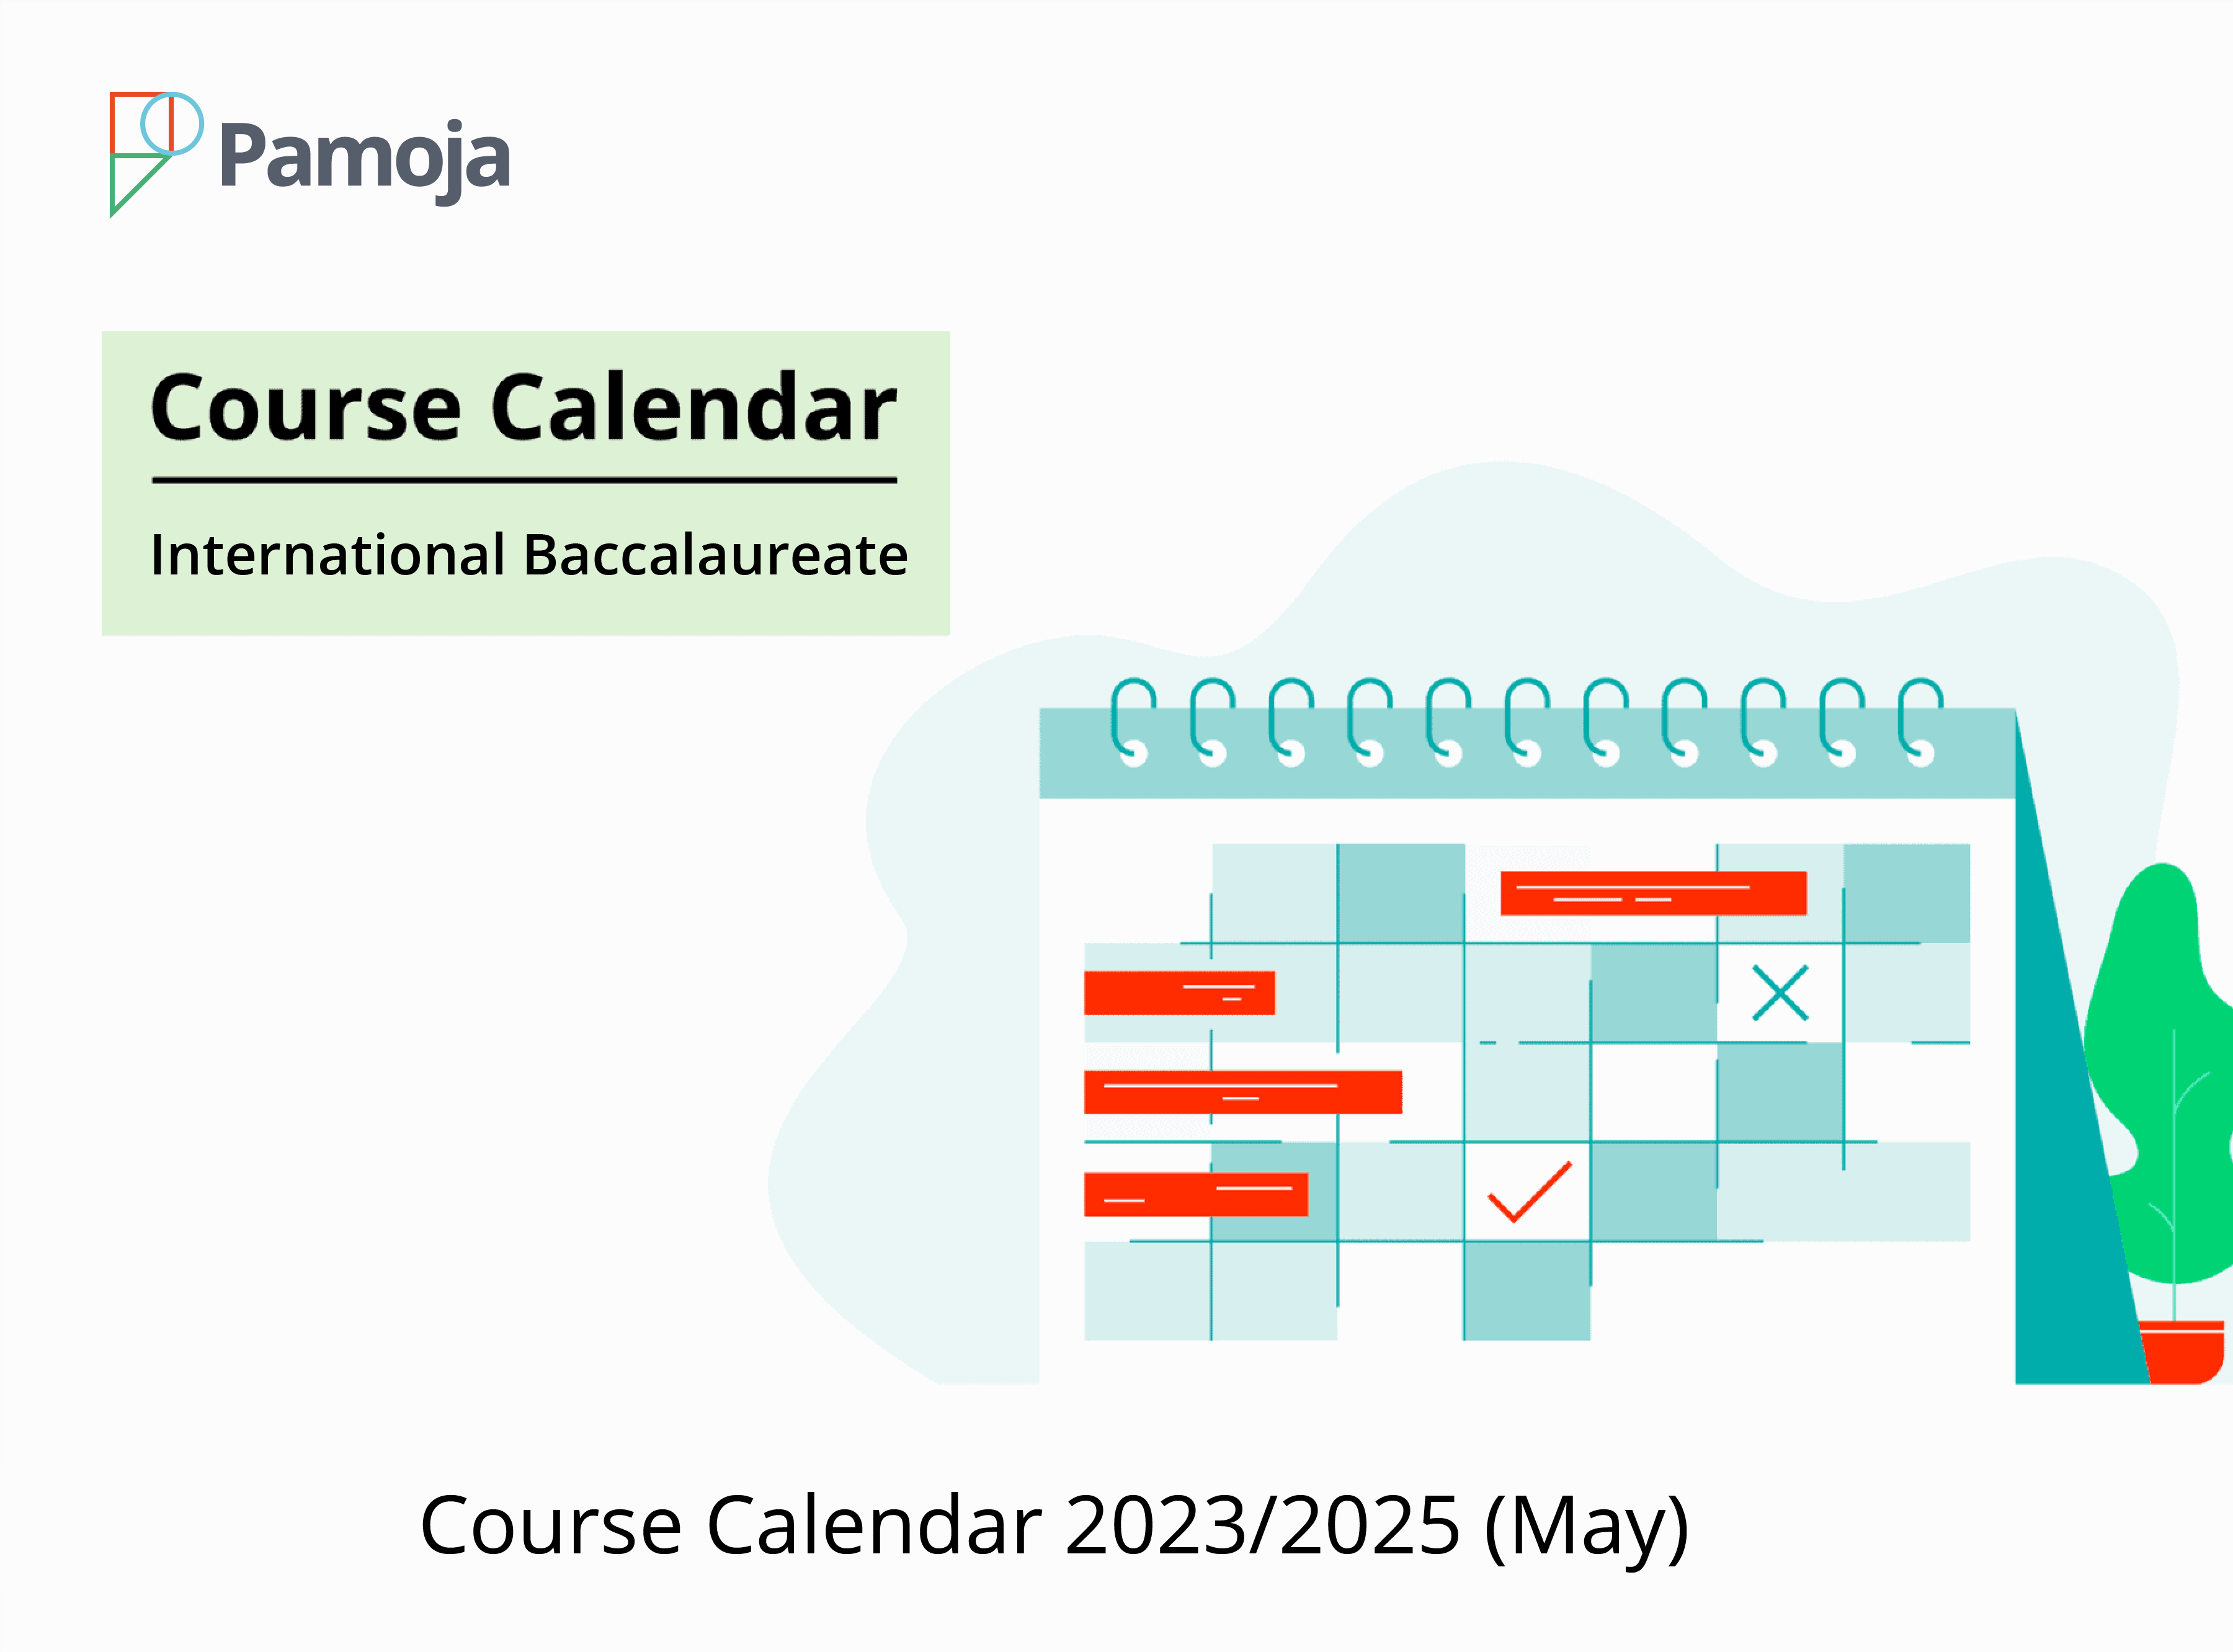 Course Calendar 2023/2025 (May)